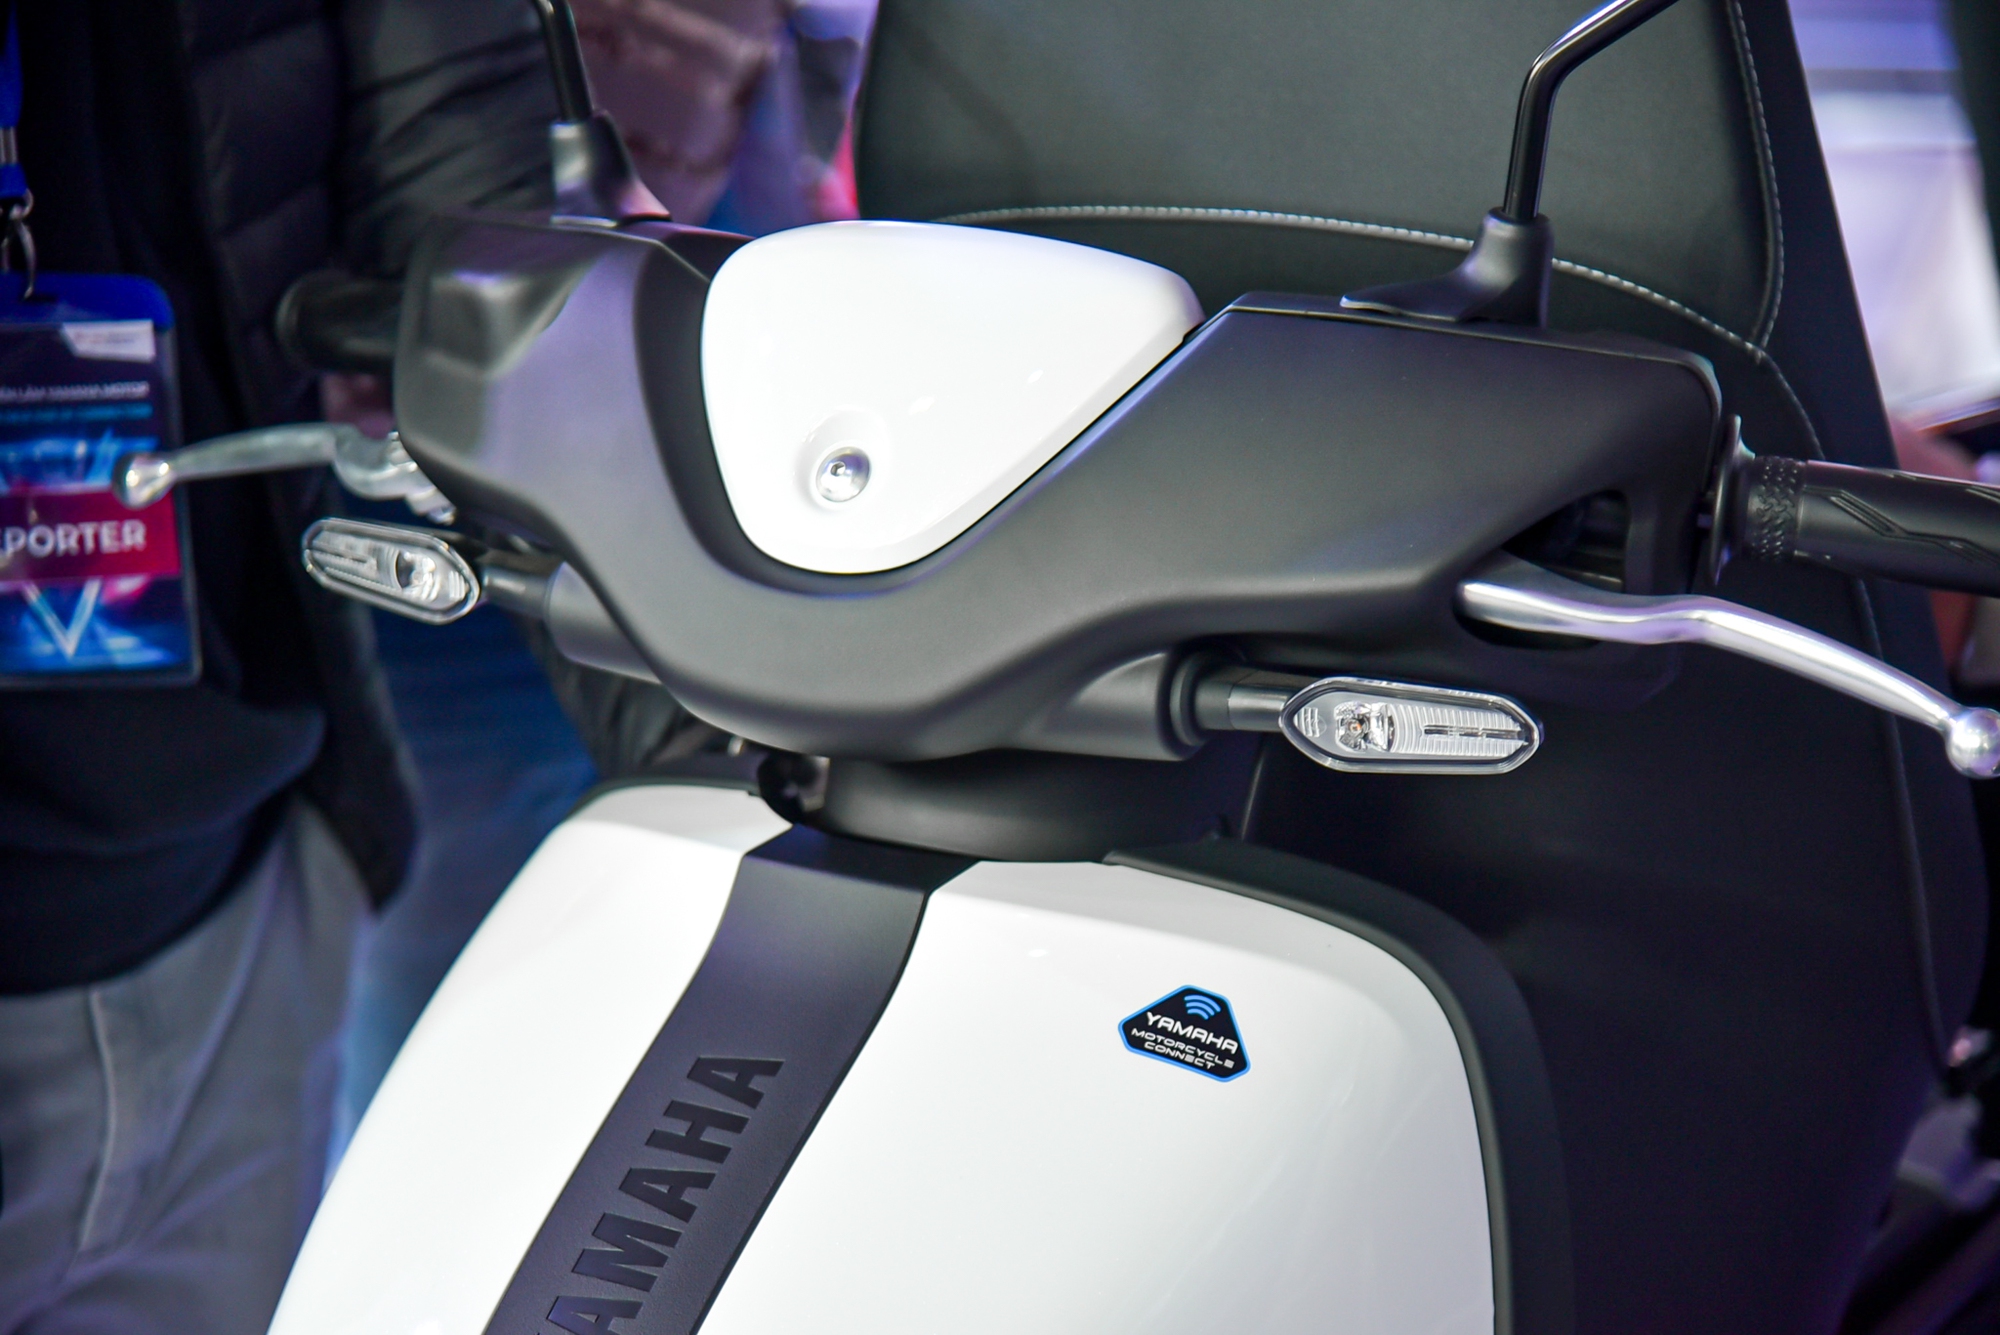 Yamaha Neos ra mắt Việt Nam: Giá 50 triệu đồng, có thể đi tối đa 144 km, cạnh tranh VinFast Vento S - Ảnh 10.